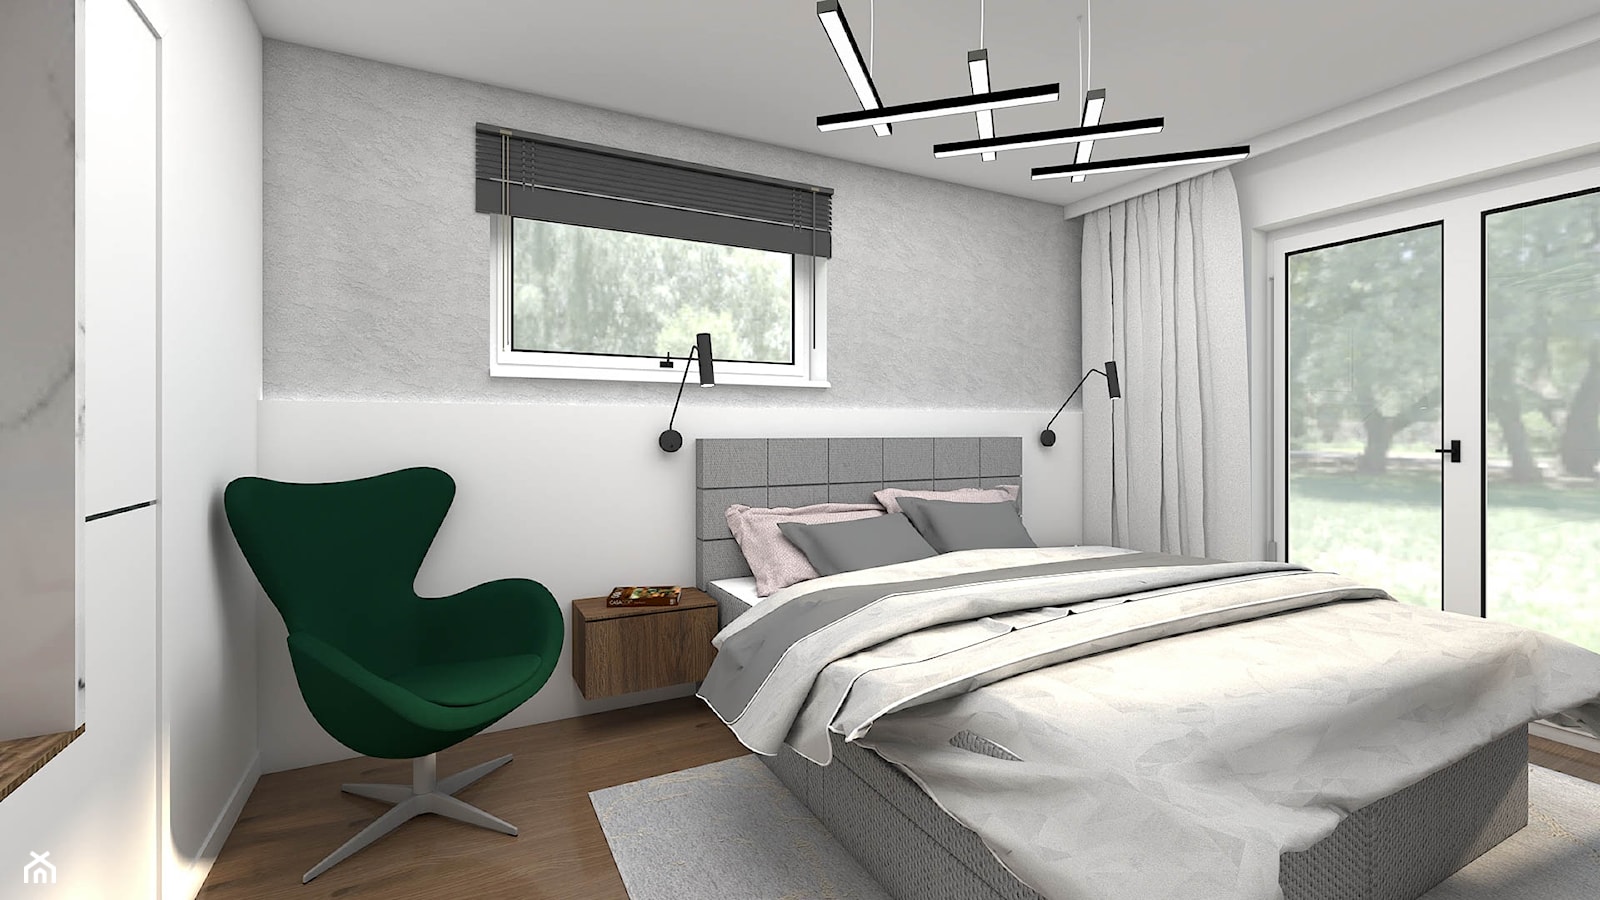 Nowoczesna sypialnia z betonem architektonicznym na ścianie - zdjęcie od wnetrzewdomu - Homebook